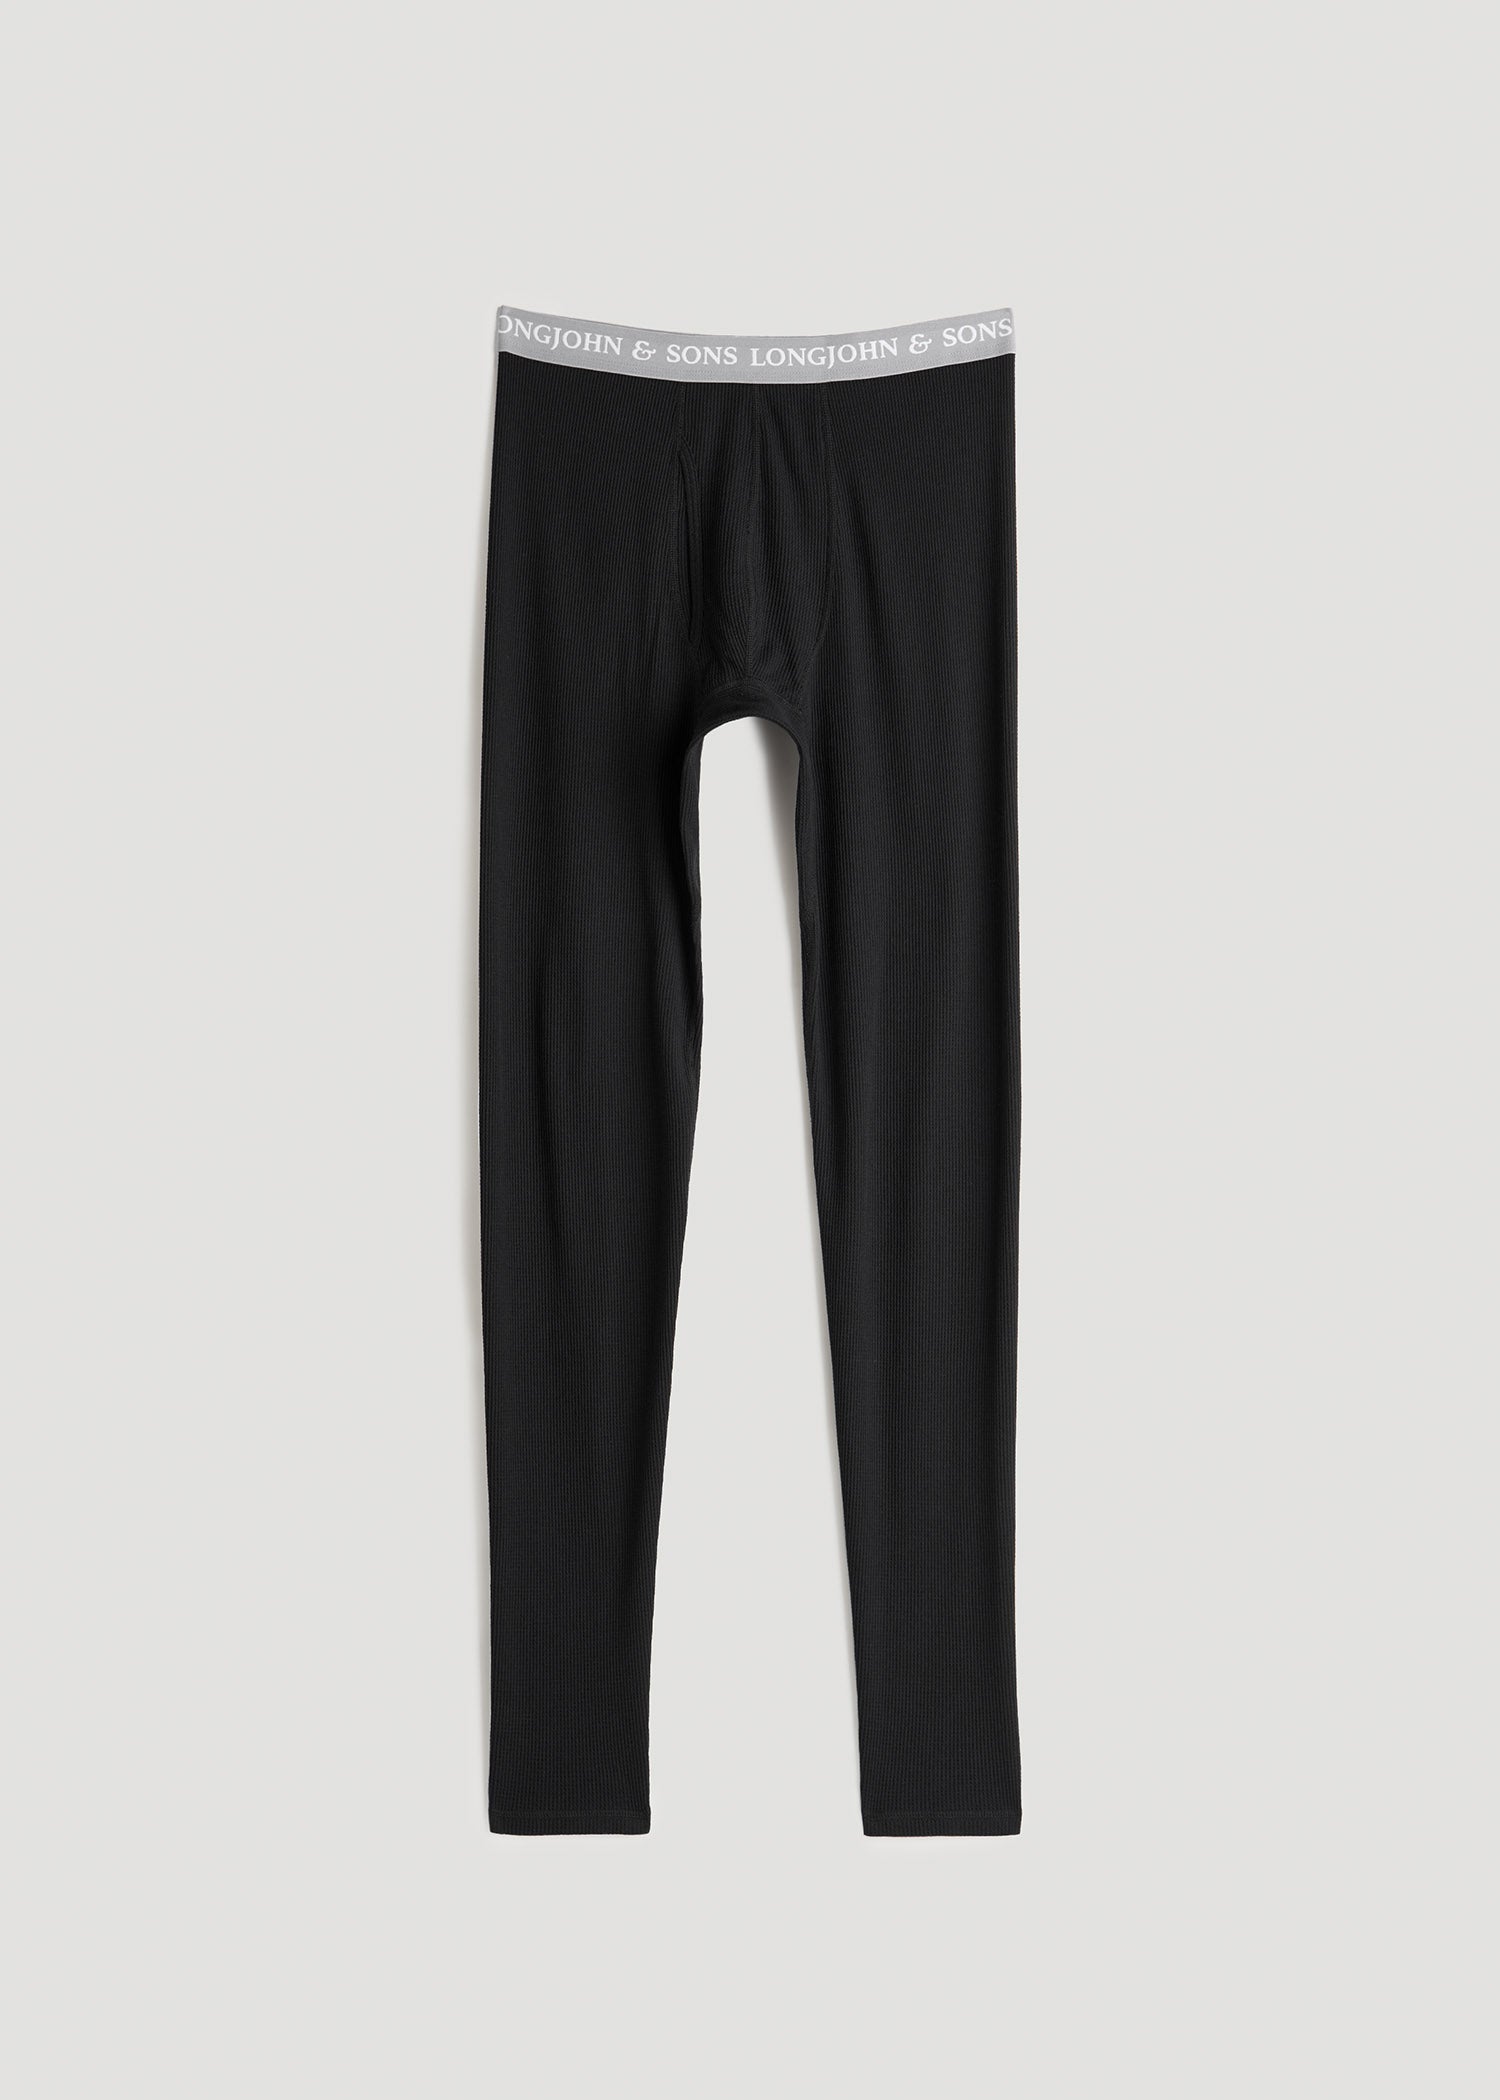 http://americantall.com/cdn/shop/files/American-Tall-Men-LJ-Thermal-Underwear-Black-front.jpg?v=1689278353